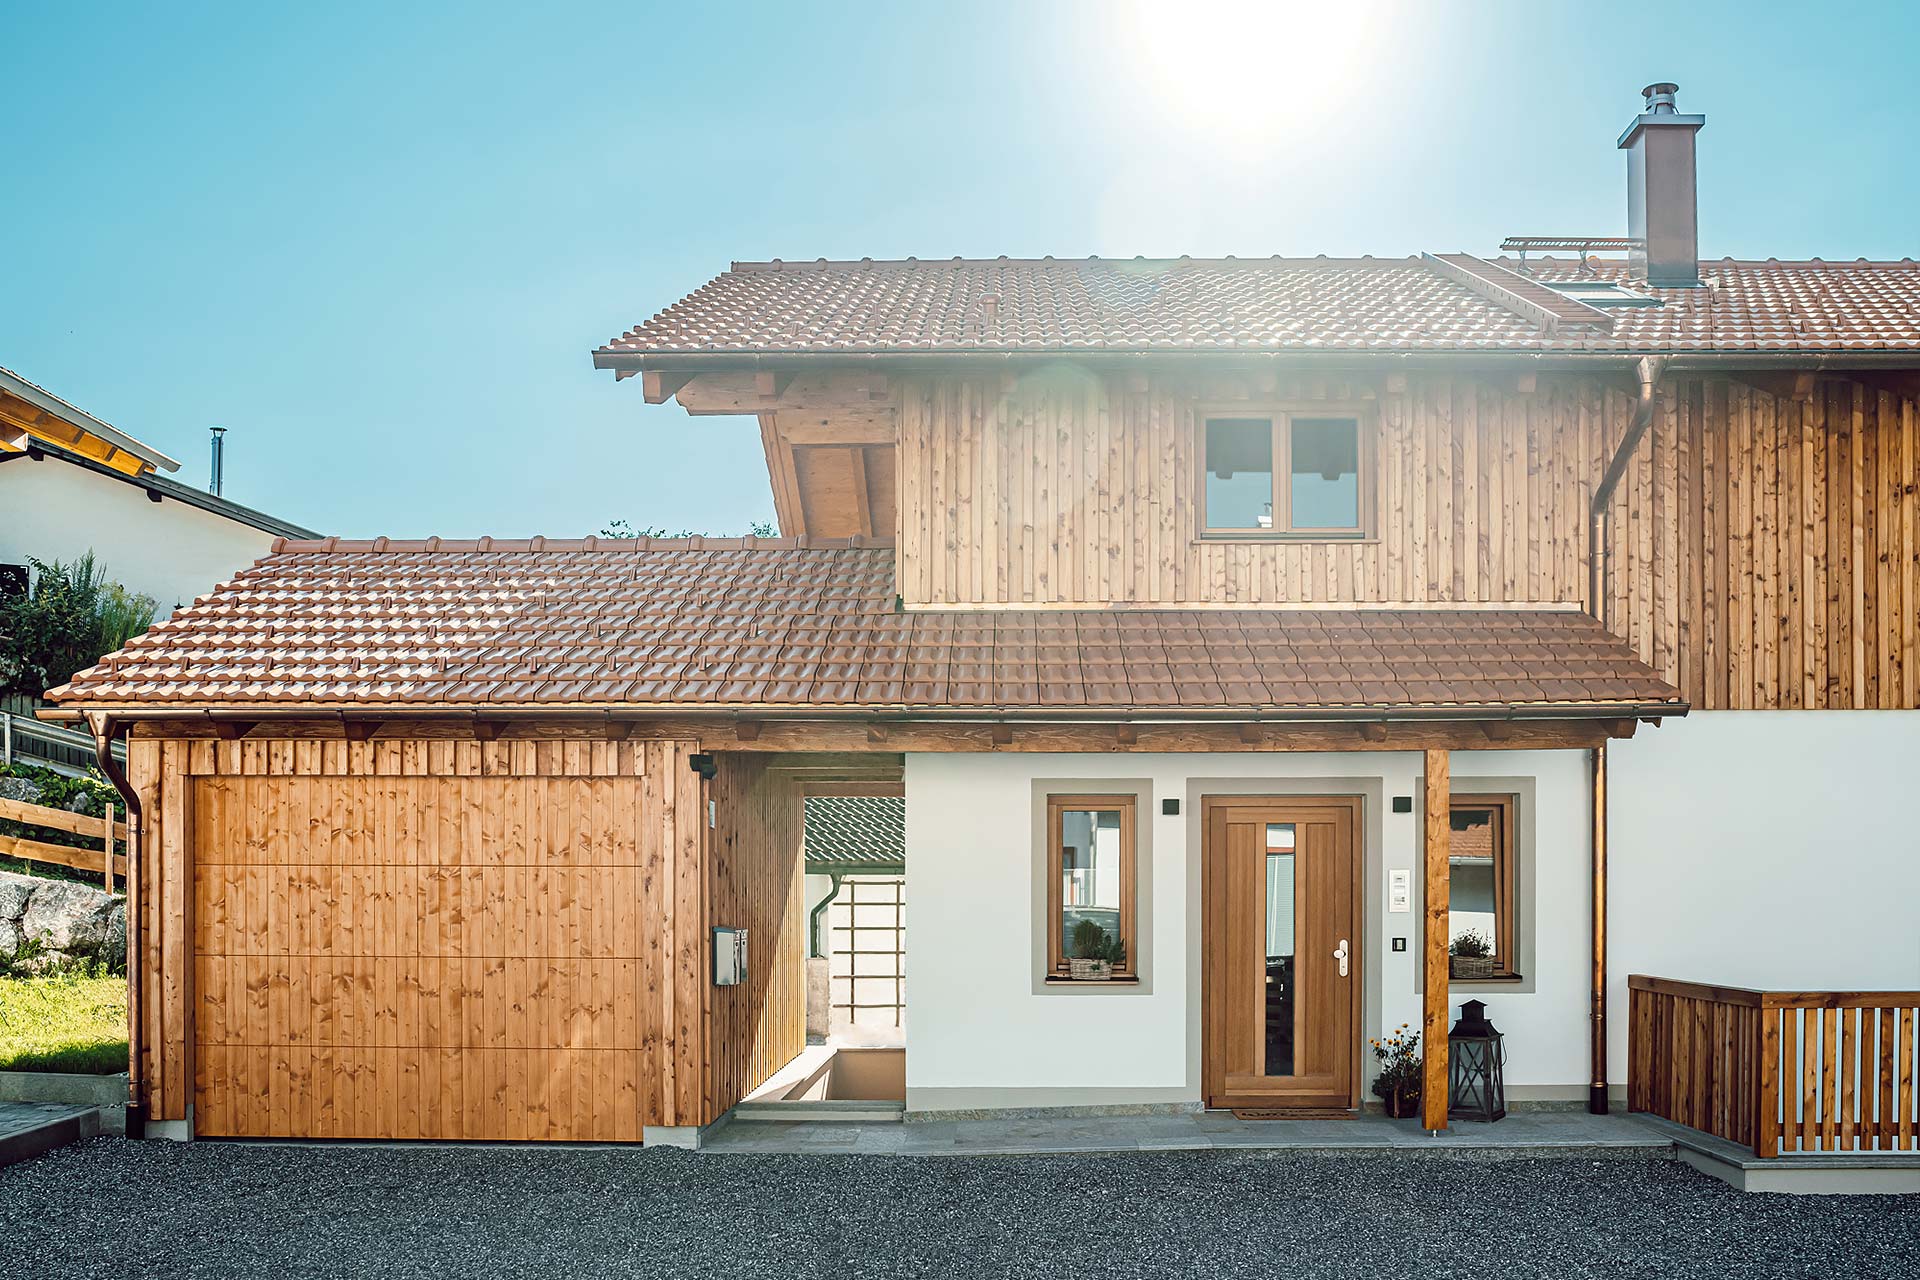 Einfamilienhaus mit Lärchenschalung und Dachstuhl aus Fichte (gehakt)